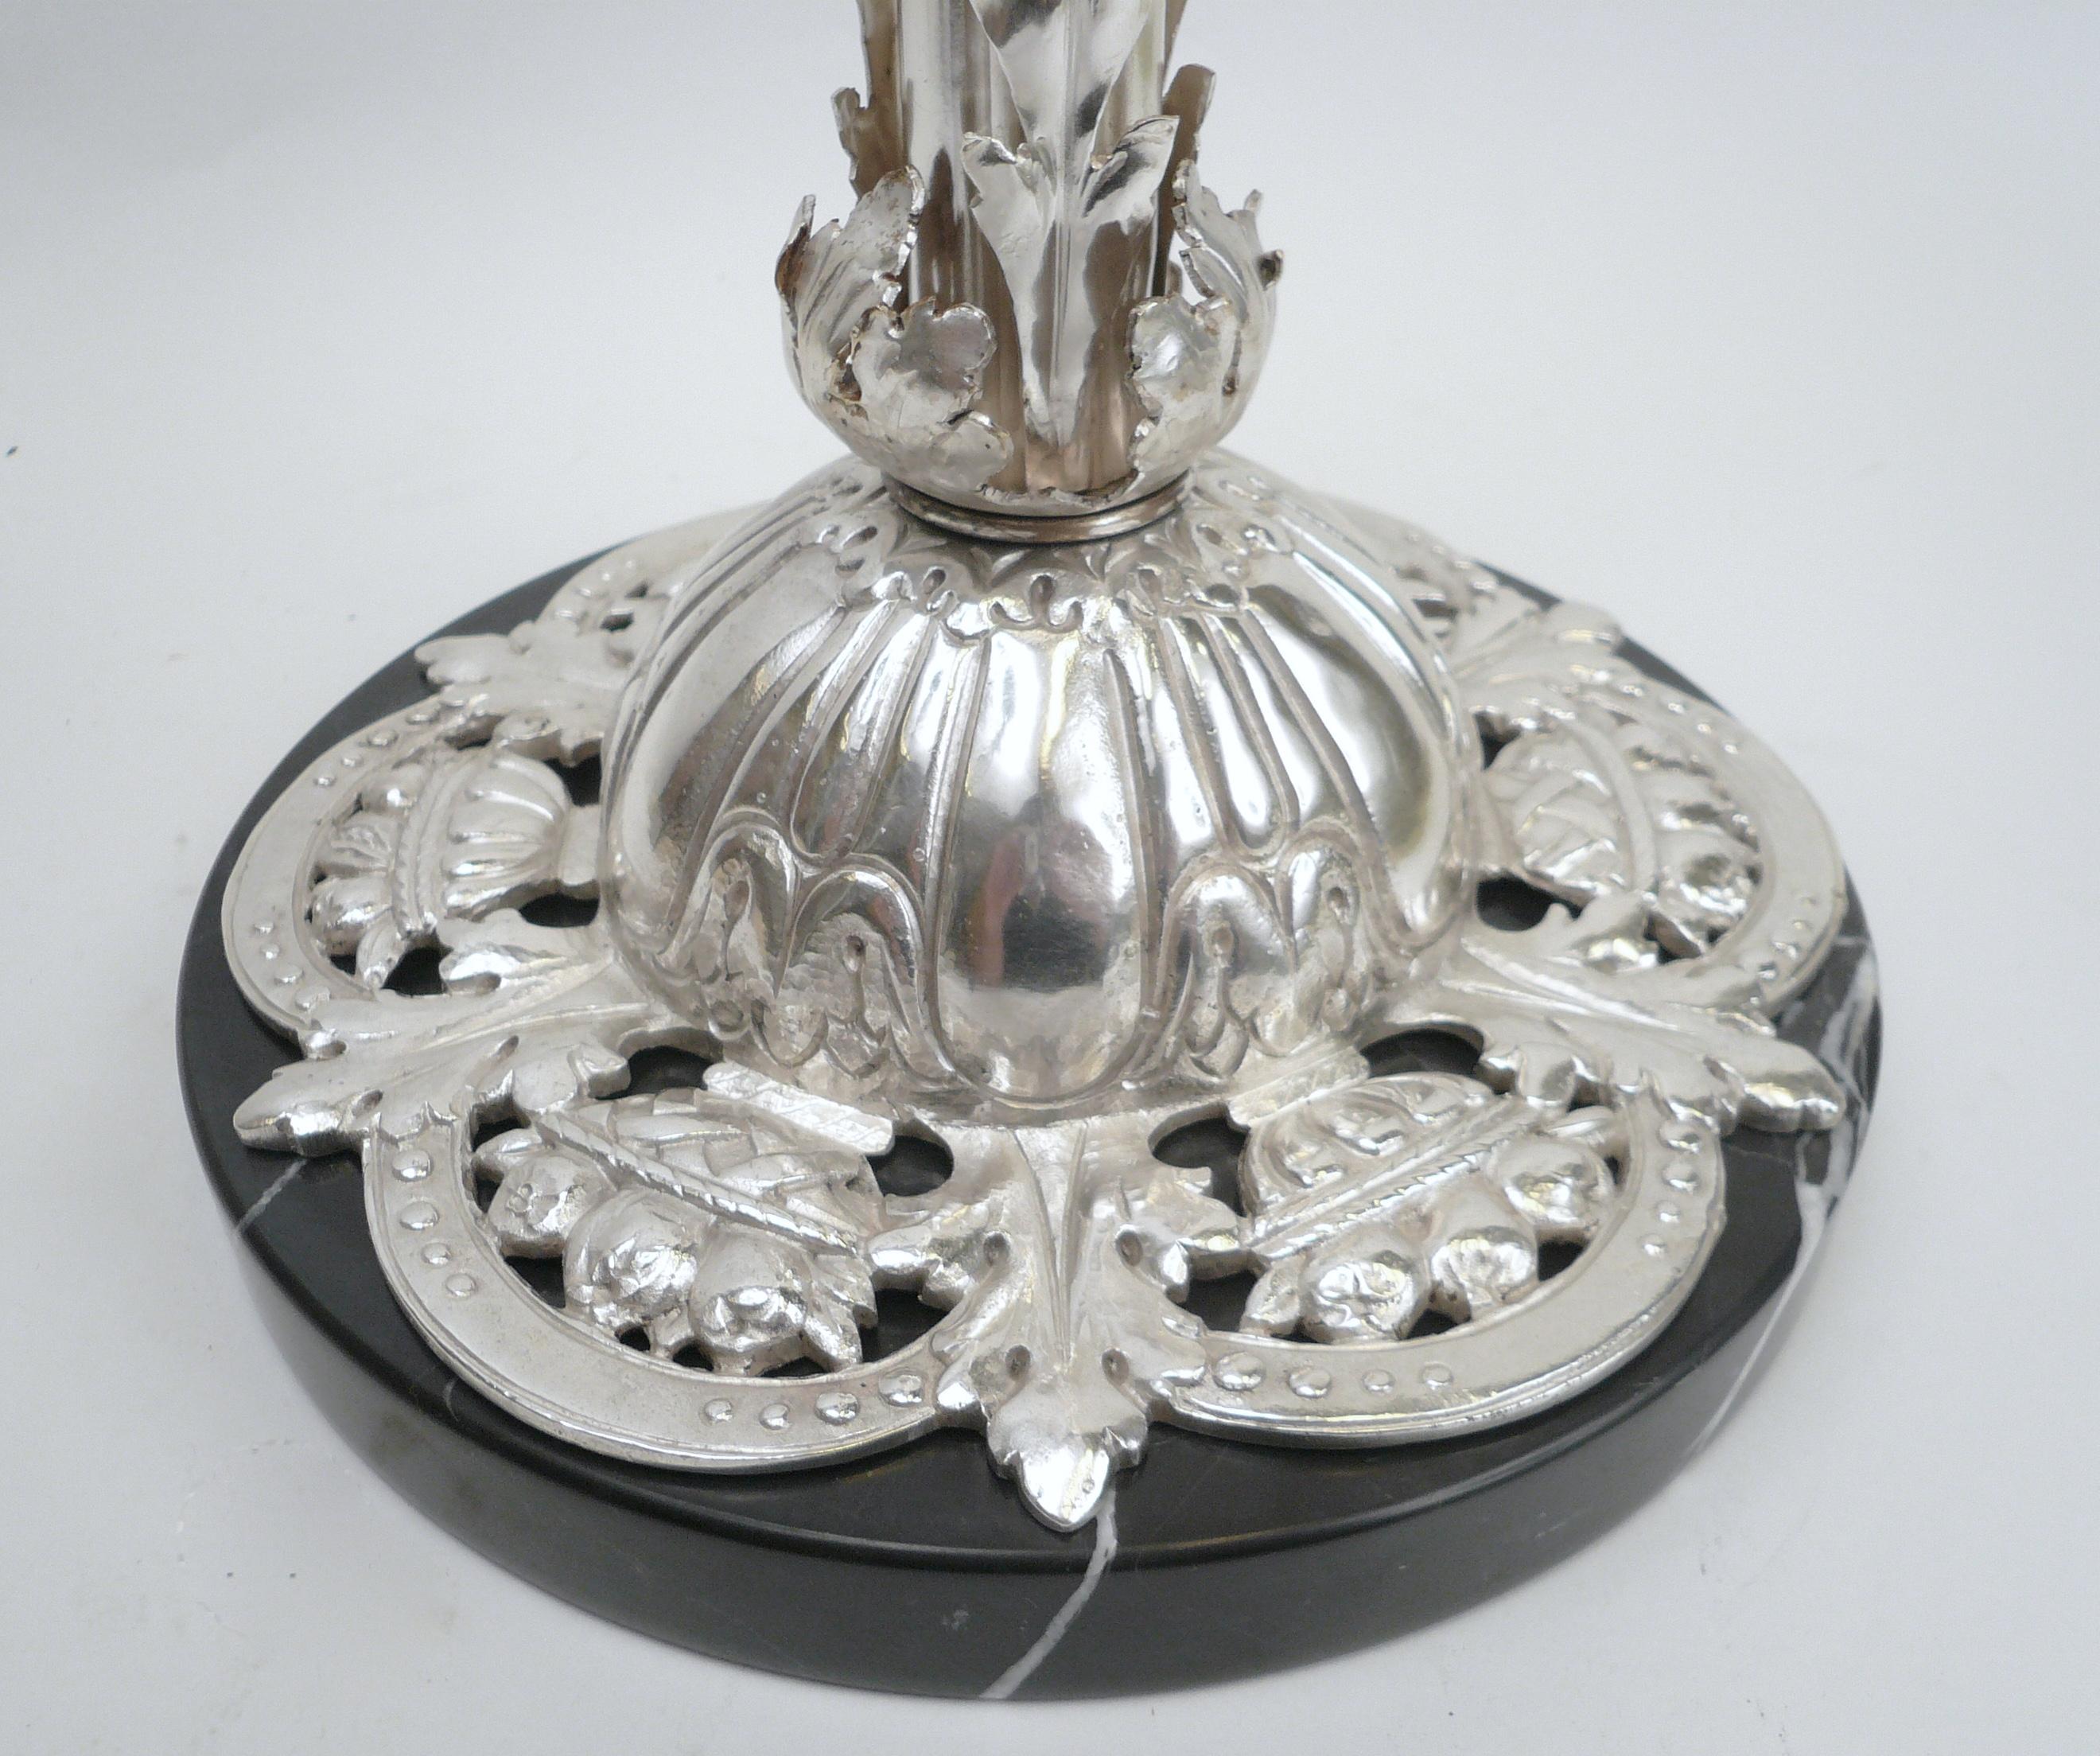 Cette jolie lampe de table en bronze moulé et martelé à la main présente des motifs feuillus et une base florale percée.